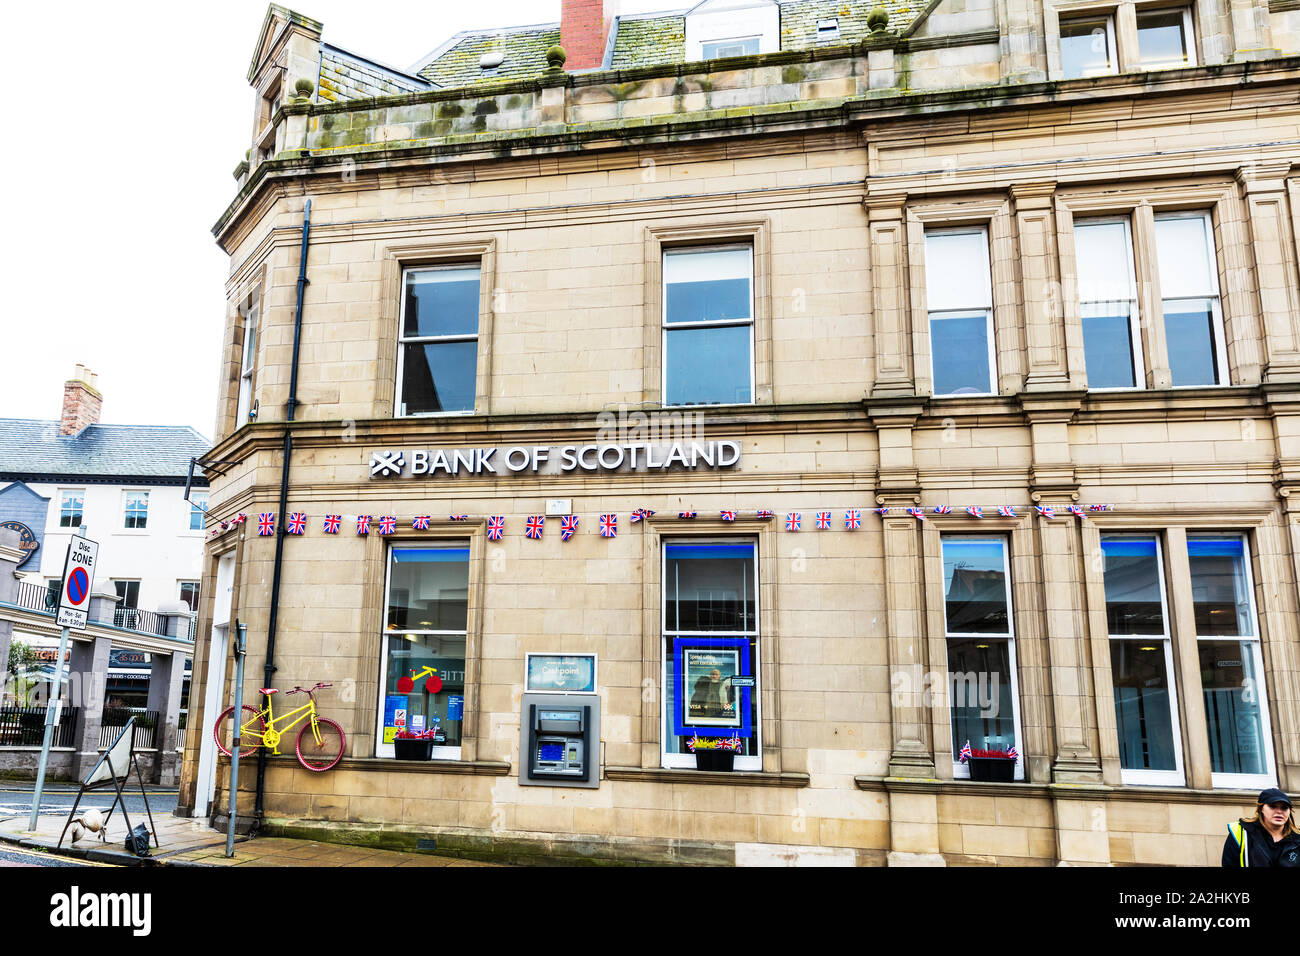 Bank von Schottland cashpoint Maschine, Berwick upon Tweed, Northumberland, Großbritannien, England, ATM, Geldautomaten, Bank von Schottland, Logo, High Street Bank Stockfoto